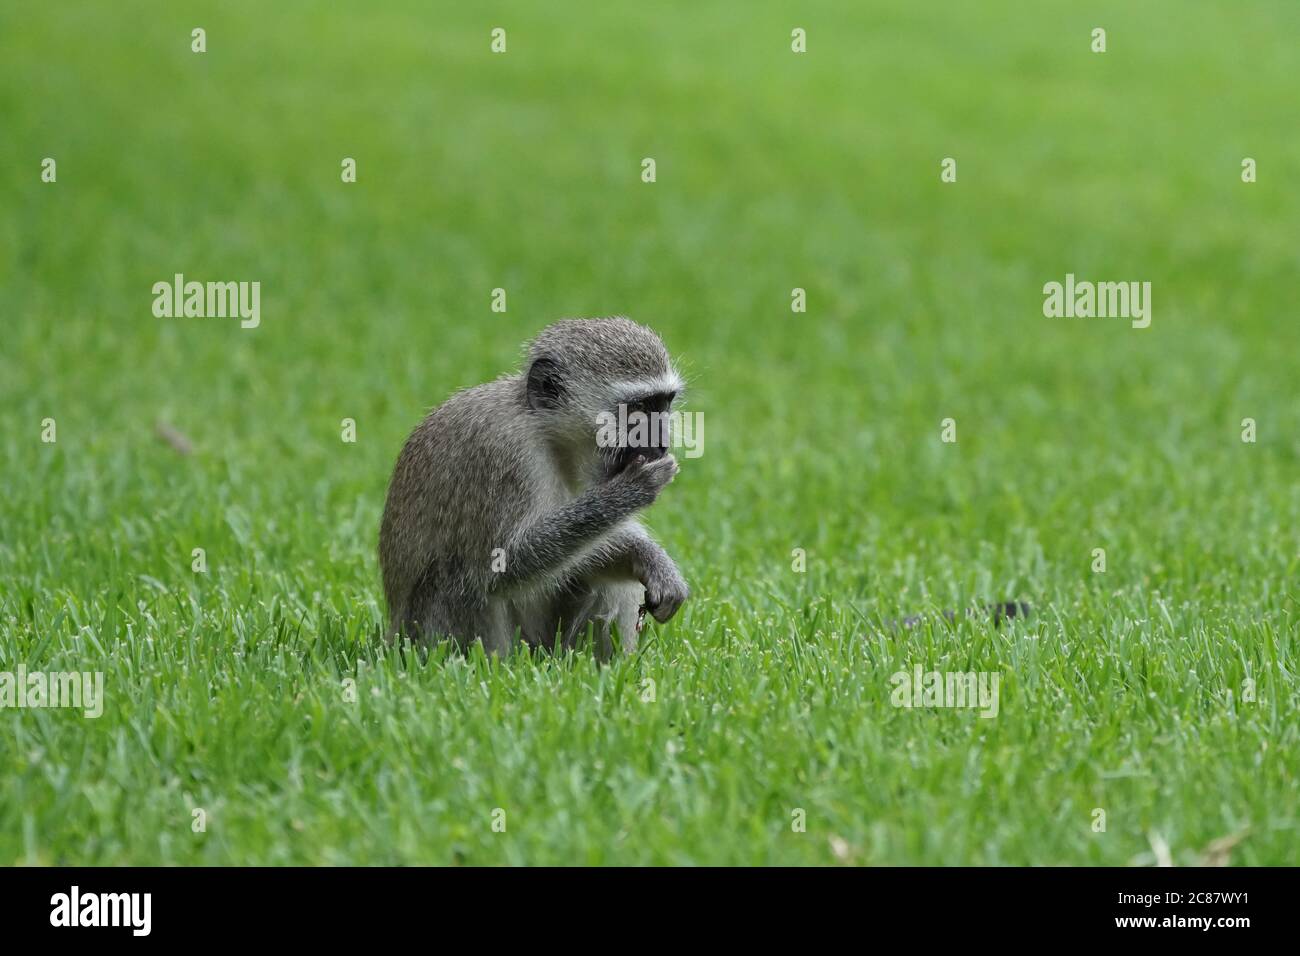 Le jeune singe jeune de Vervet (Chlorocebus pygerythrus) est assis sur l'herbe verte en tenant sa main jusqu'à sa bouche avec de la nourriture Banque D'Images